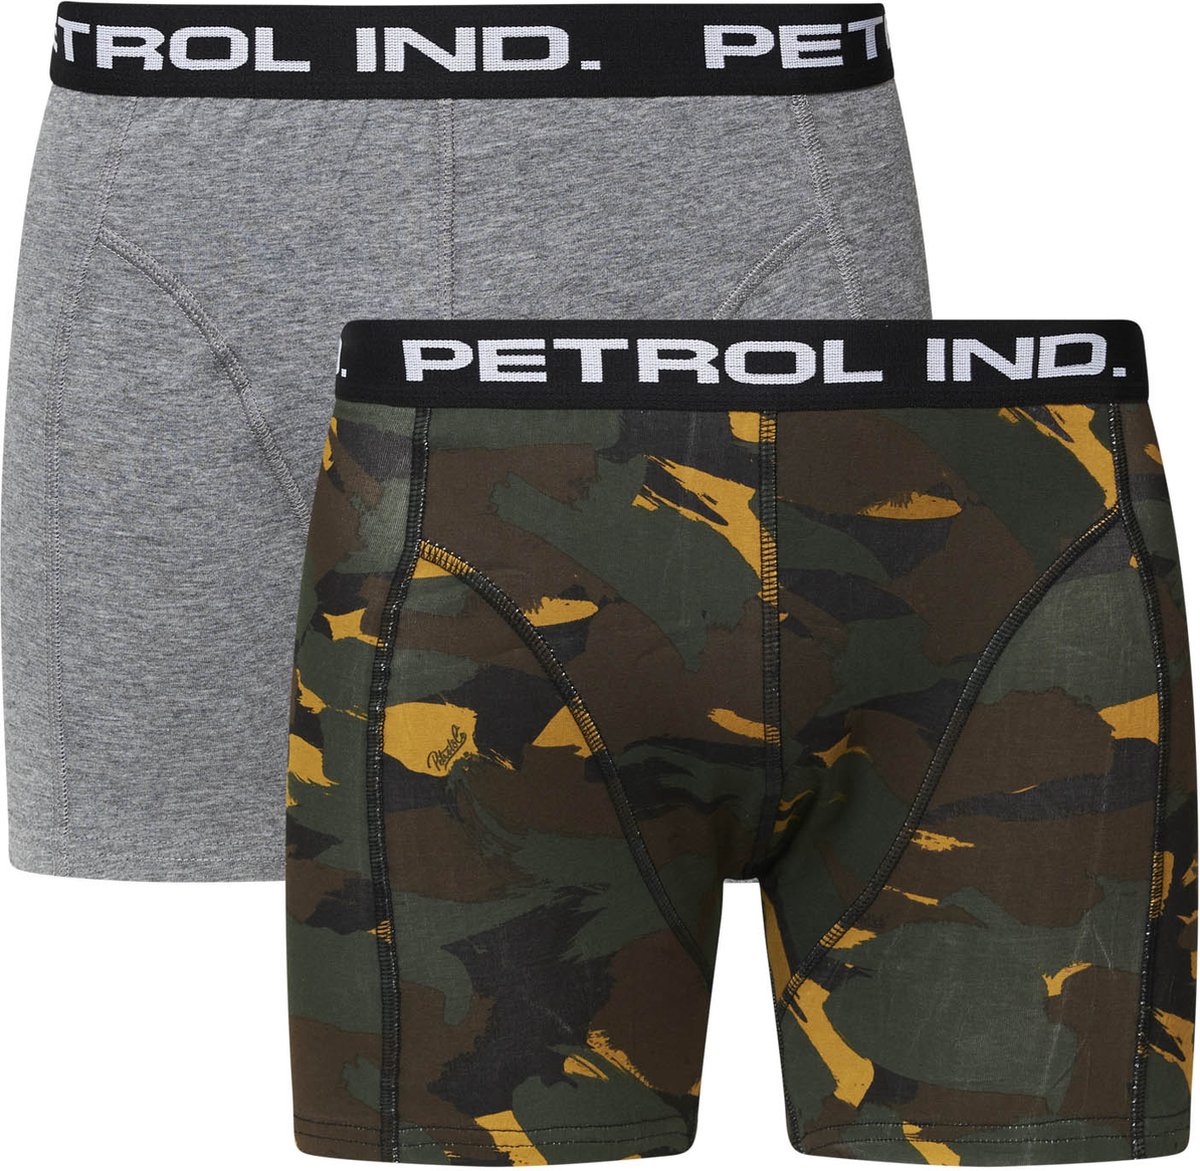 Petrol Onderbroek - Petrol Industries - 2-pack Boxershorts - Grijs - Camouflage Print